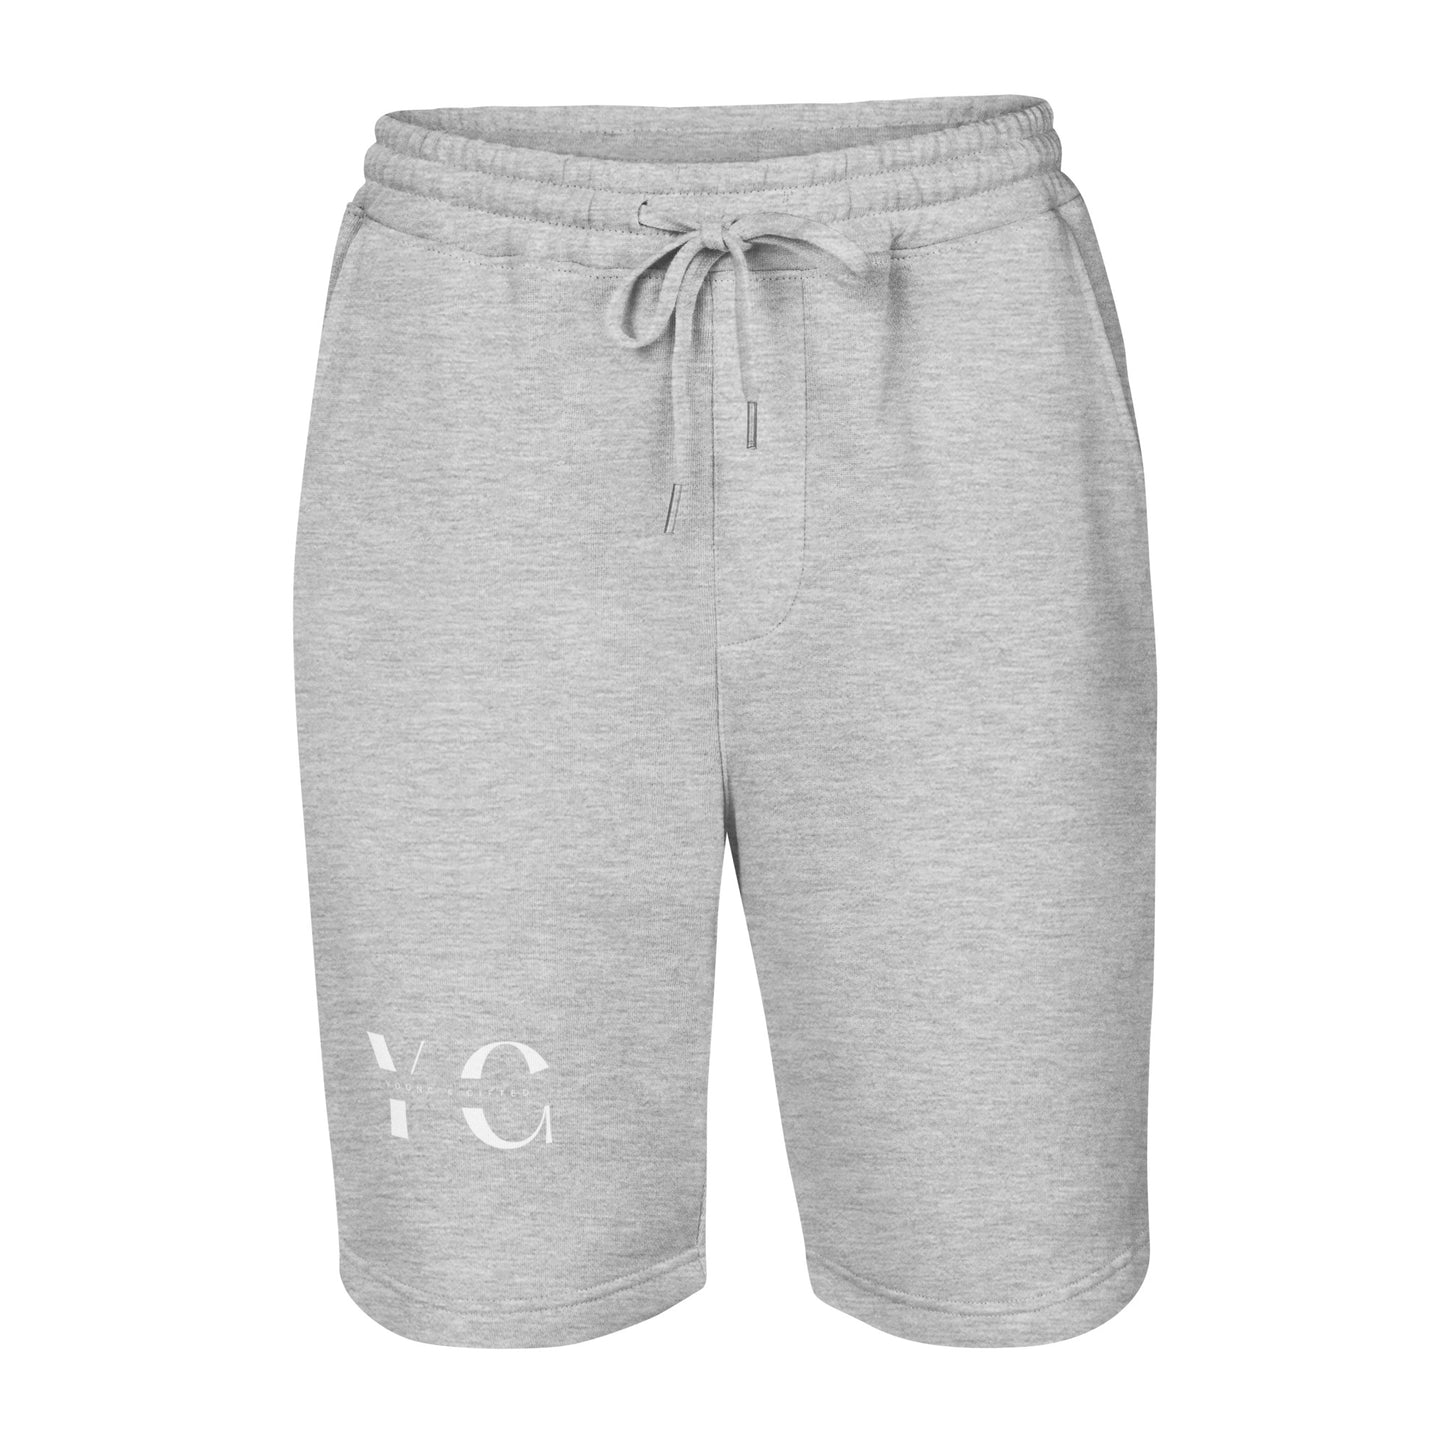 Y&G Men's Fleece Shorts #2 (Grey & Black)